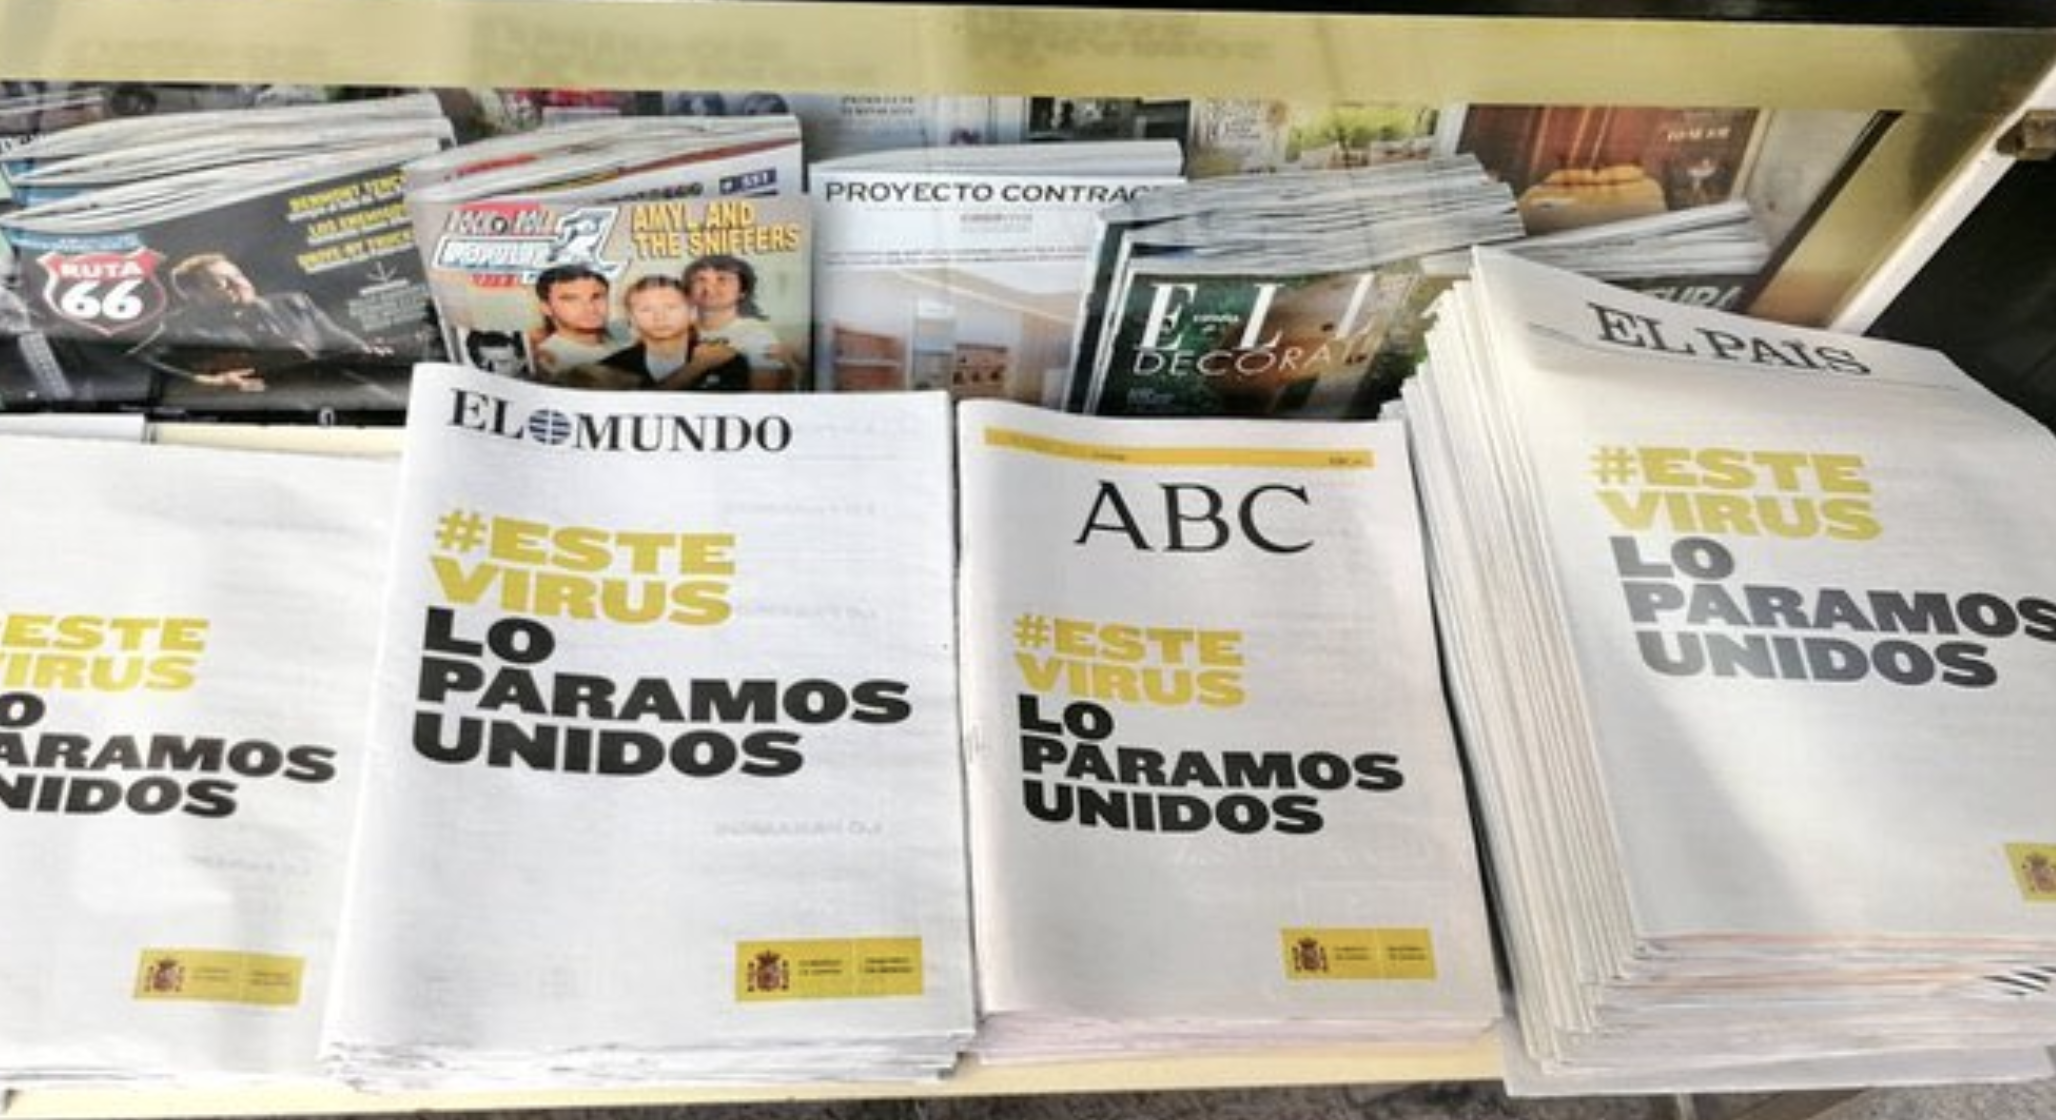 Diarios españoles publican la misma portada con la frase  #EsteVirusLoParamosUnidos para prevenir coronavirus - Clases de Periodismo